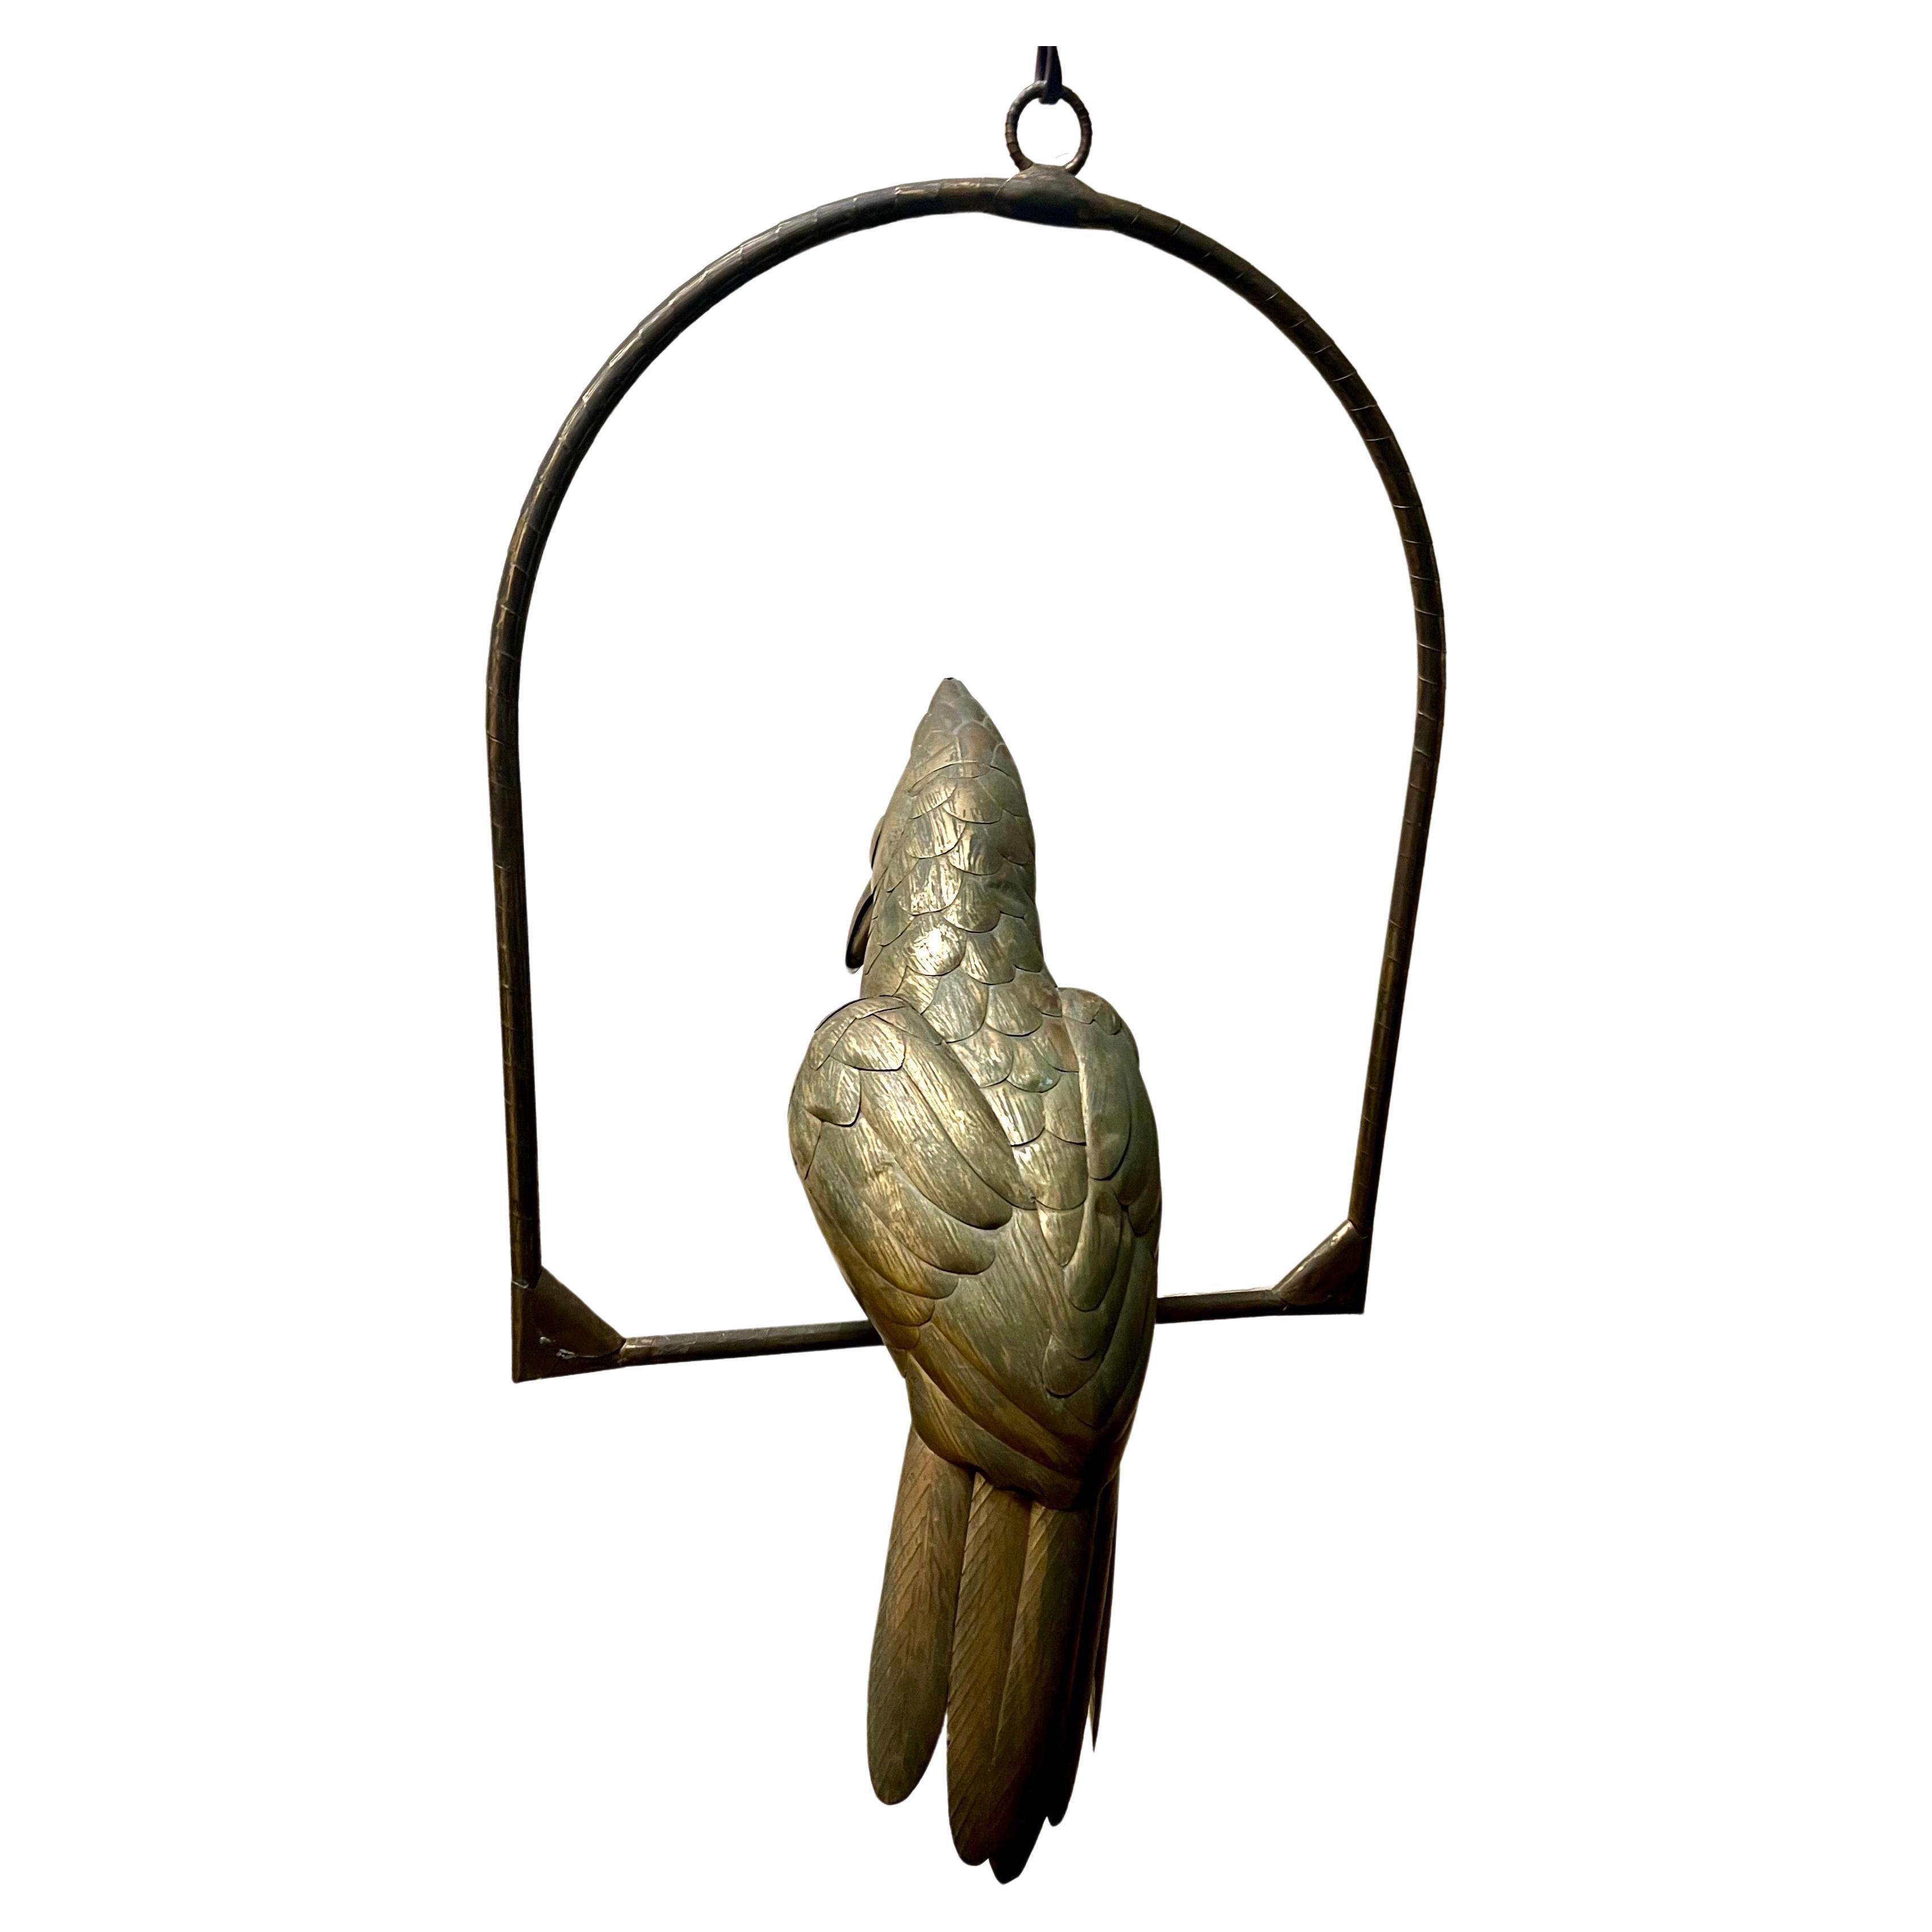  Sculpture d'oiseau perroquet en métaux mixtes (cuivre, laiton) sur un perchoir suspendu, réalisée par le célèbre artiste mexicain Sergio Bustamante, vers les années 1970. Belle patine d'usage petite bosse due à l'âge peut être polie .
